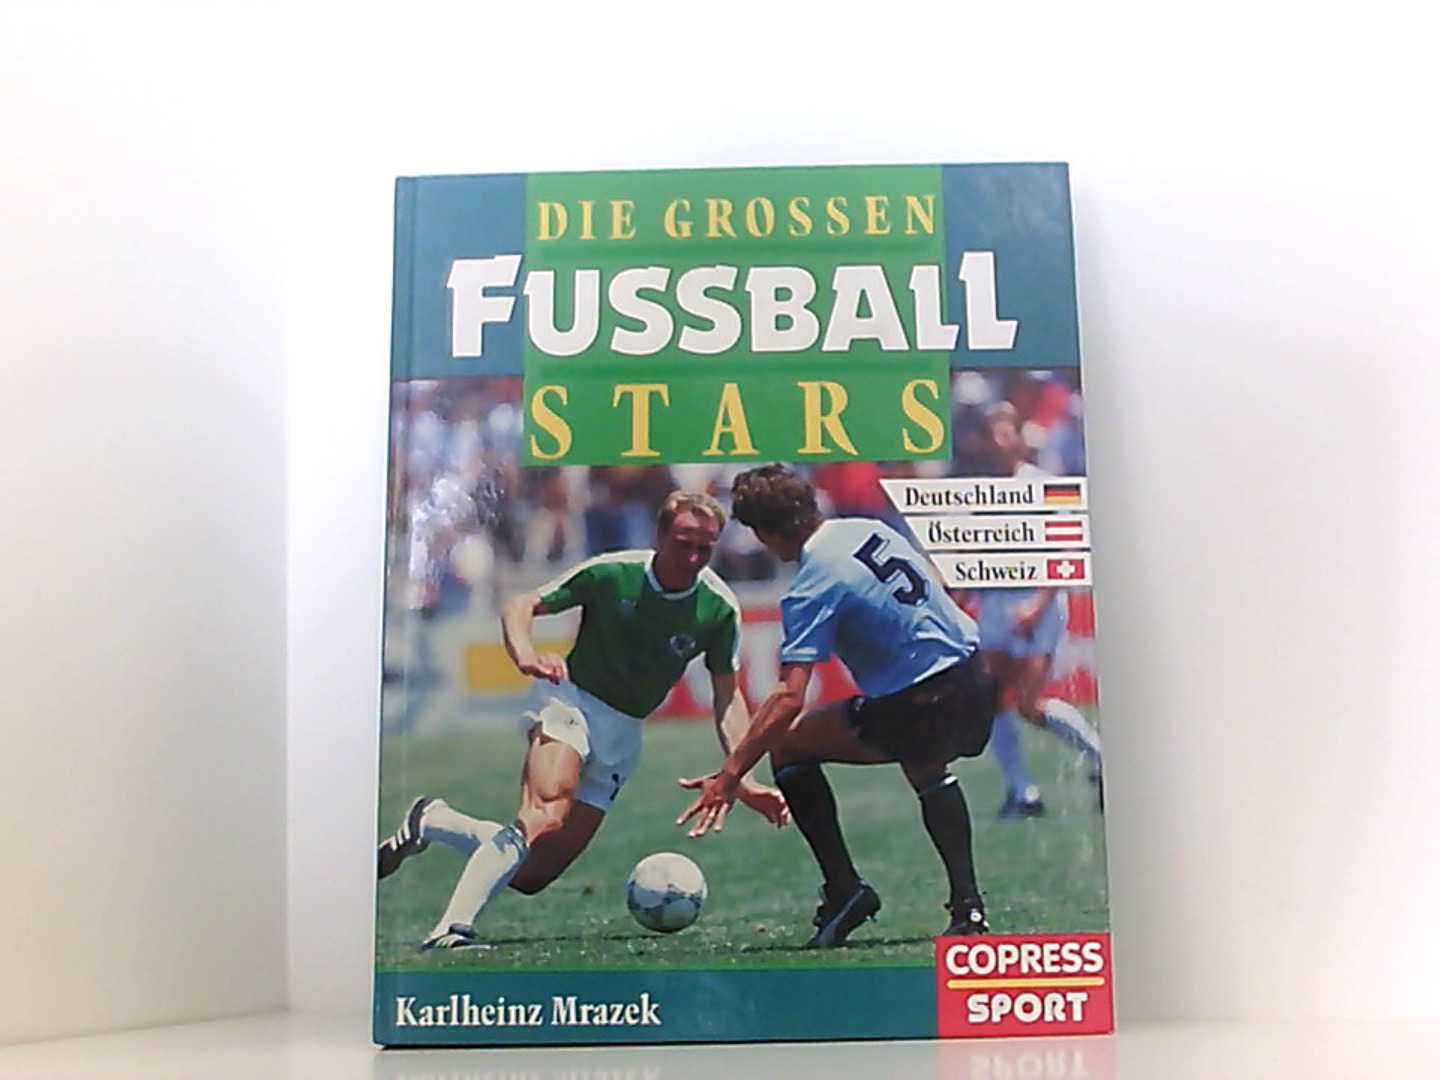 Die grossen Fussball-Stars - Mrazek, Karlheinz